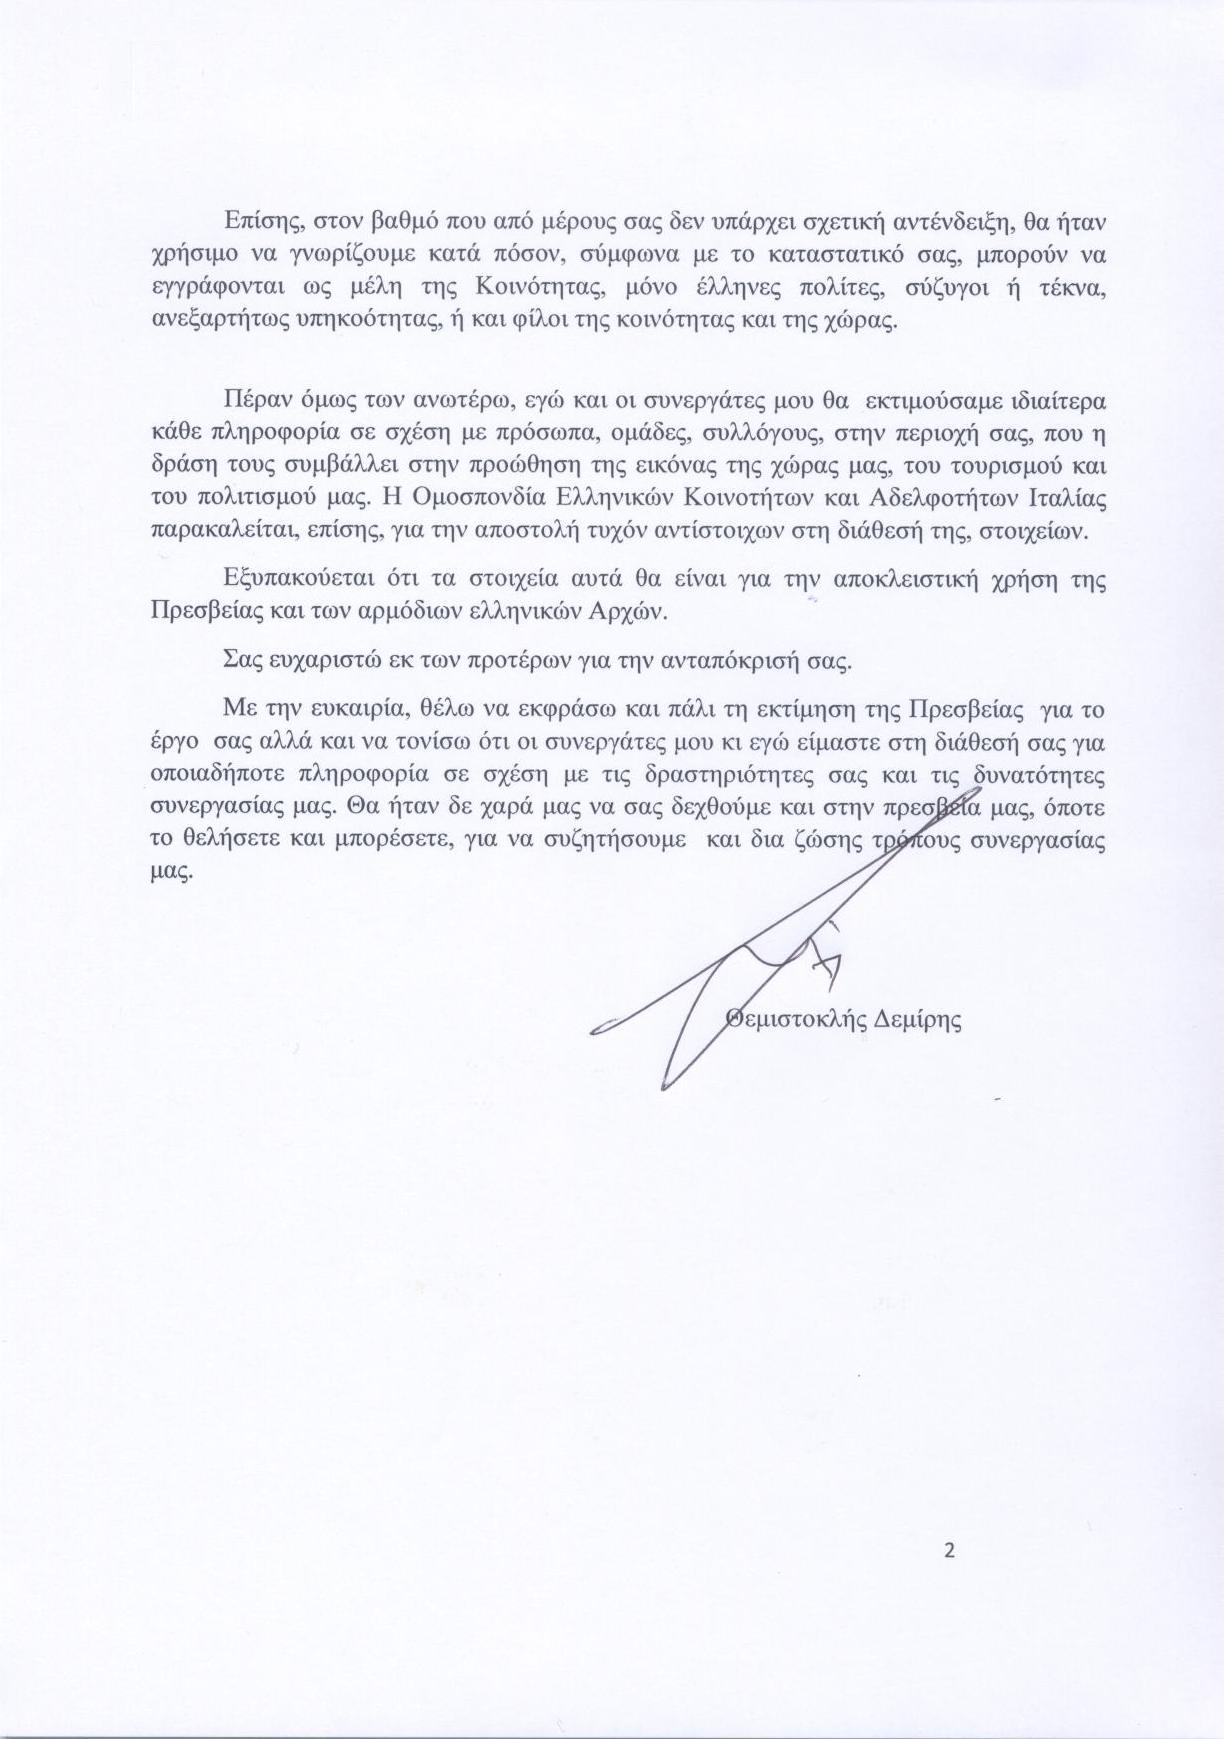 Lettera dall’ambasciatore greco.